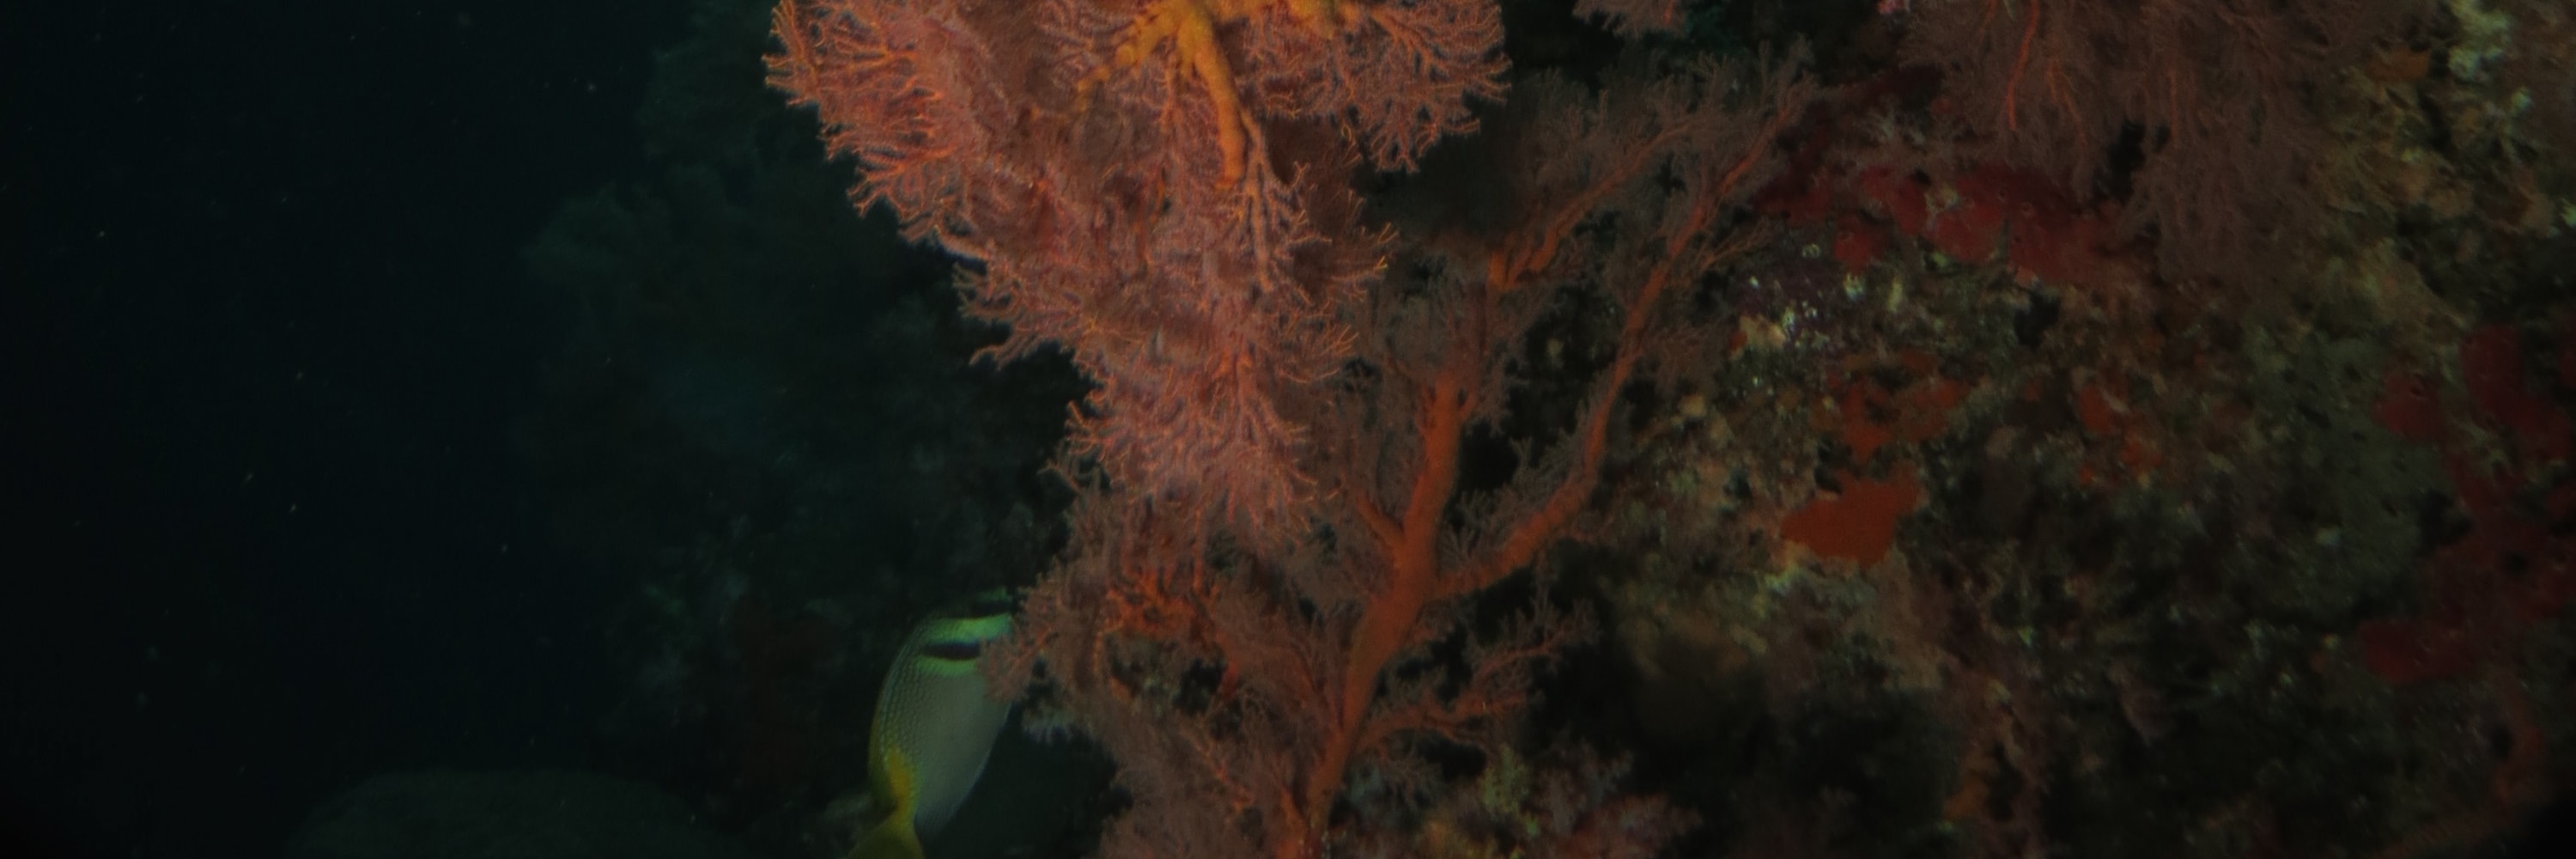 馬布島 PADI 五星潛水中心潛水進階開放水域潛水員課程